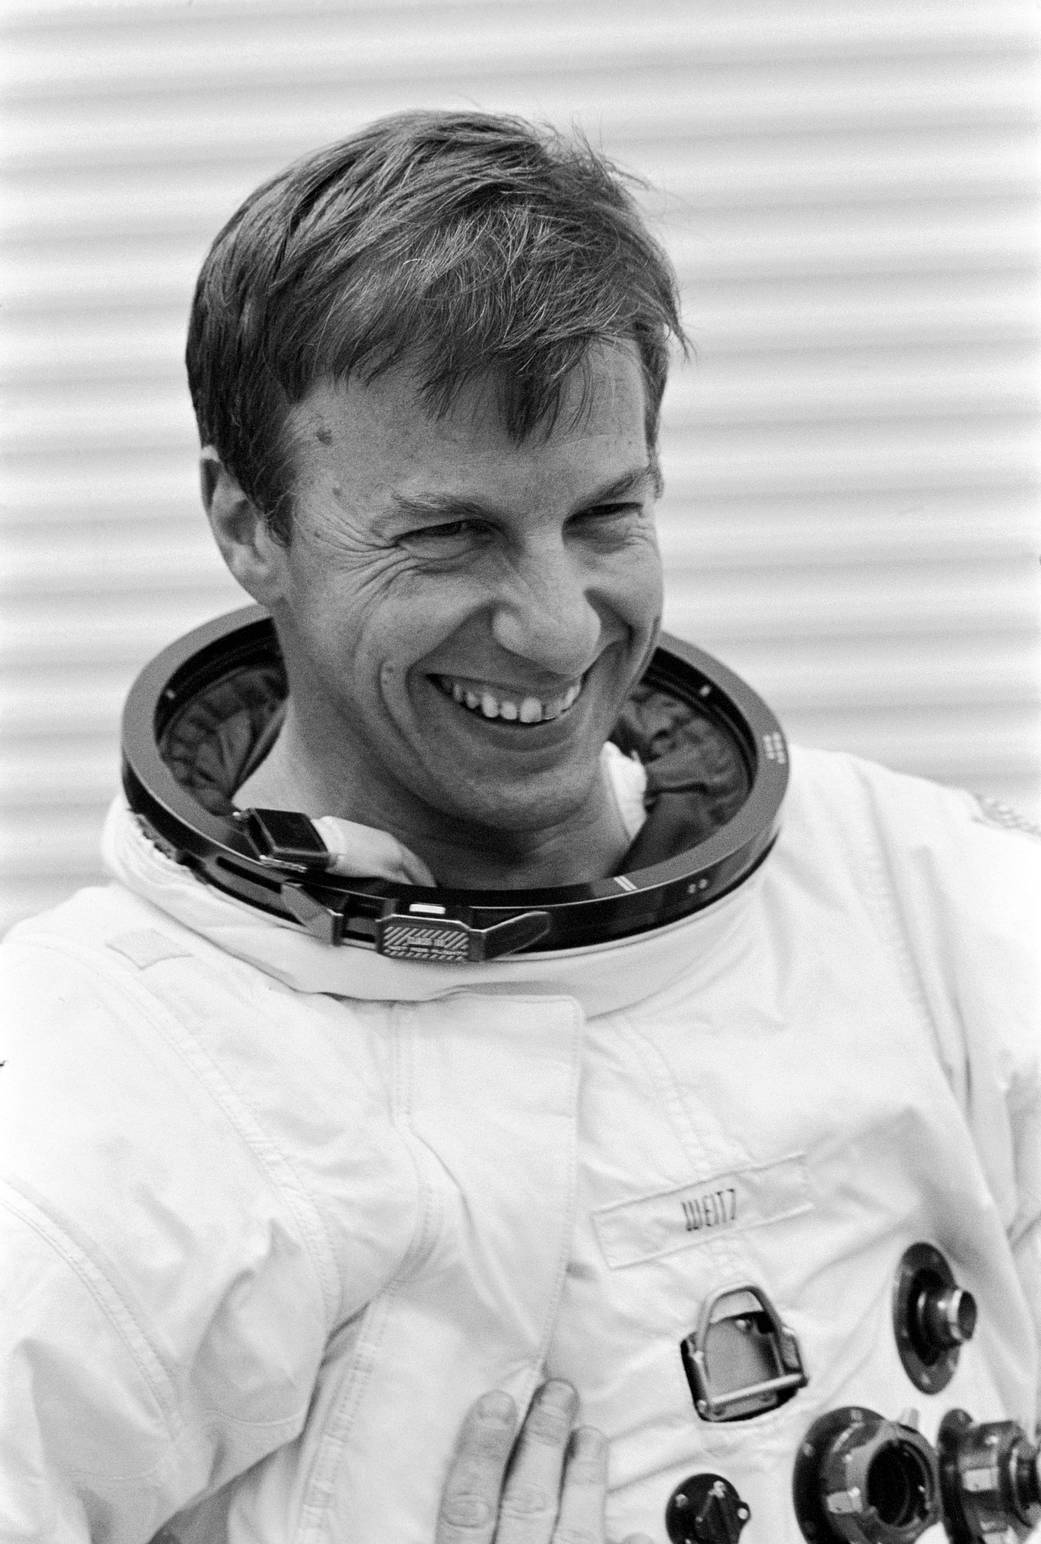 Astronaut Paul Weitz in spacesuit without helmet smiles